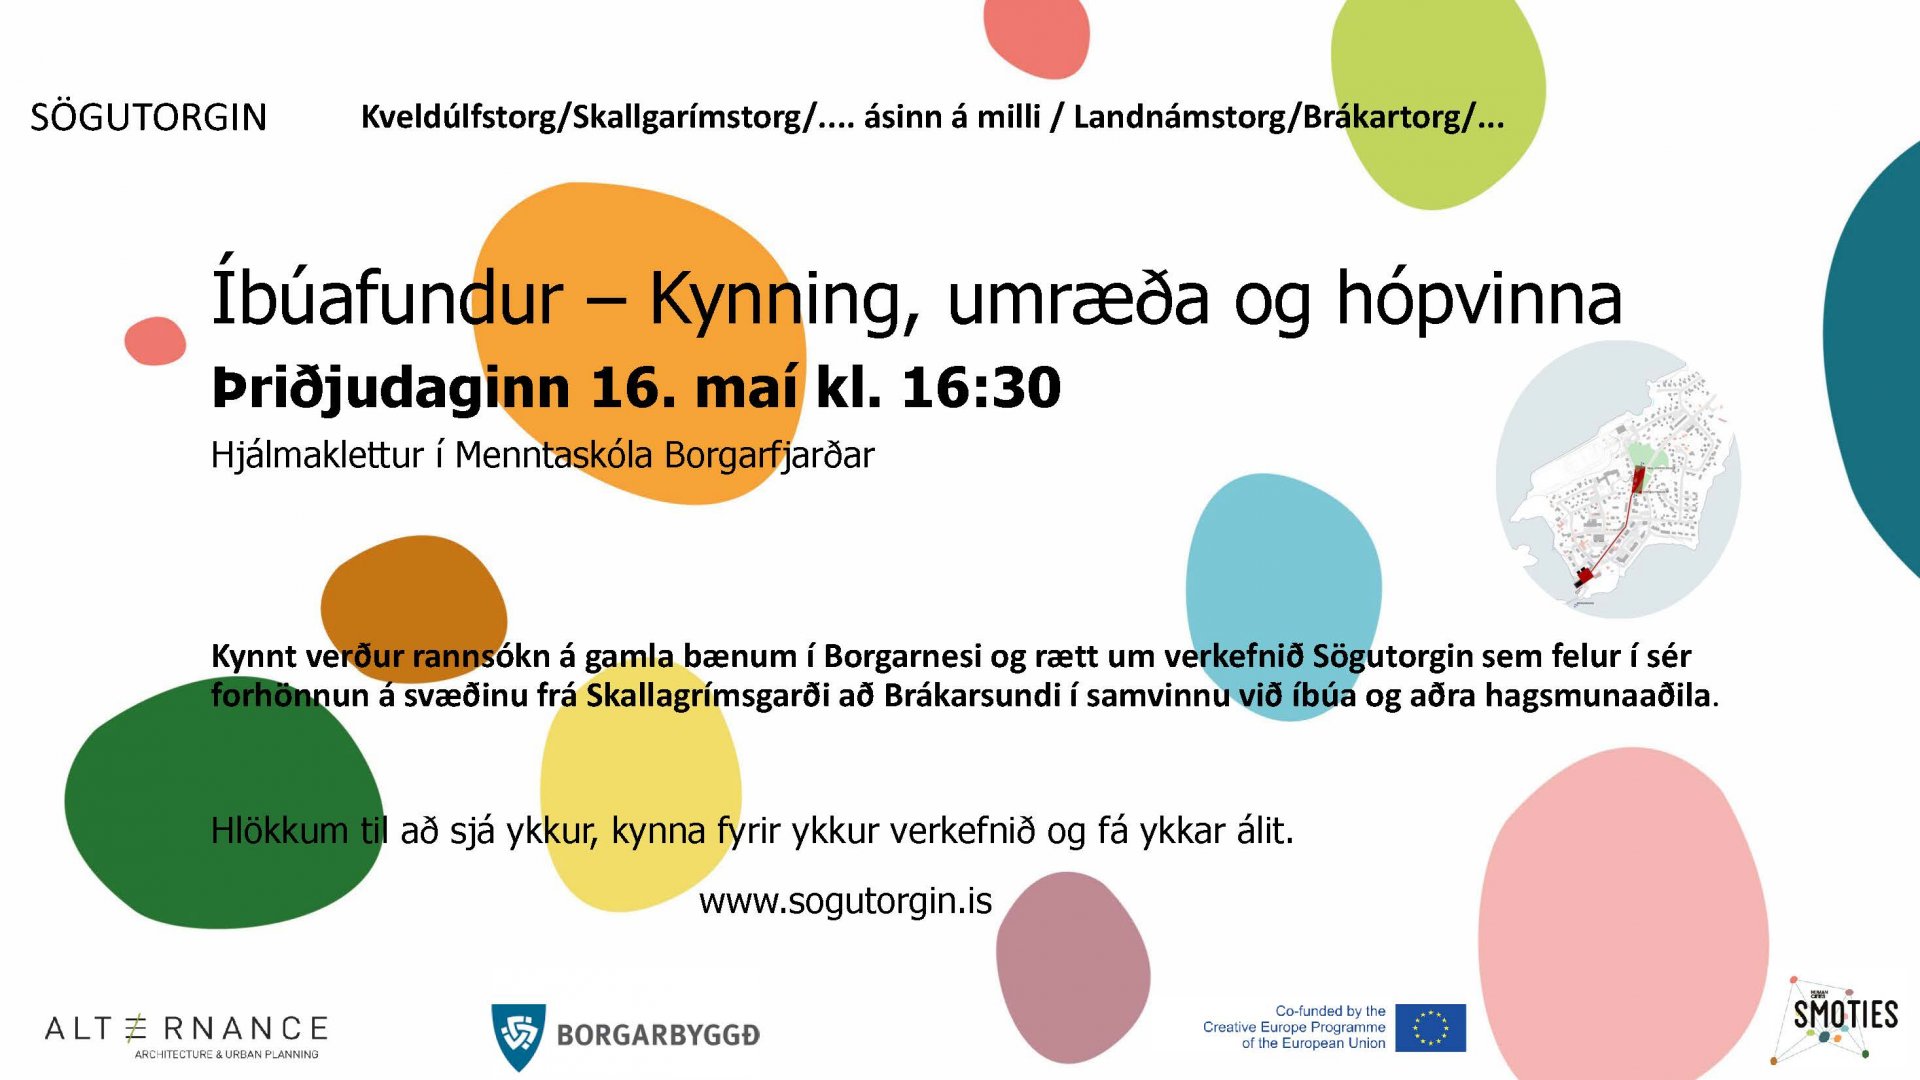 Featured image for “Íbúafundur – Kynning, umræða og hópvinna”